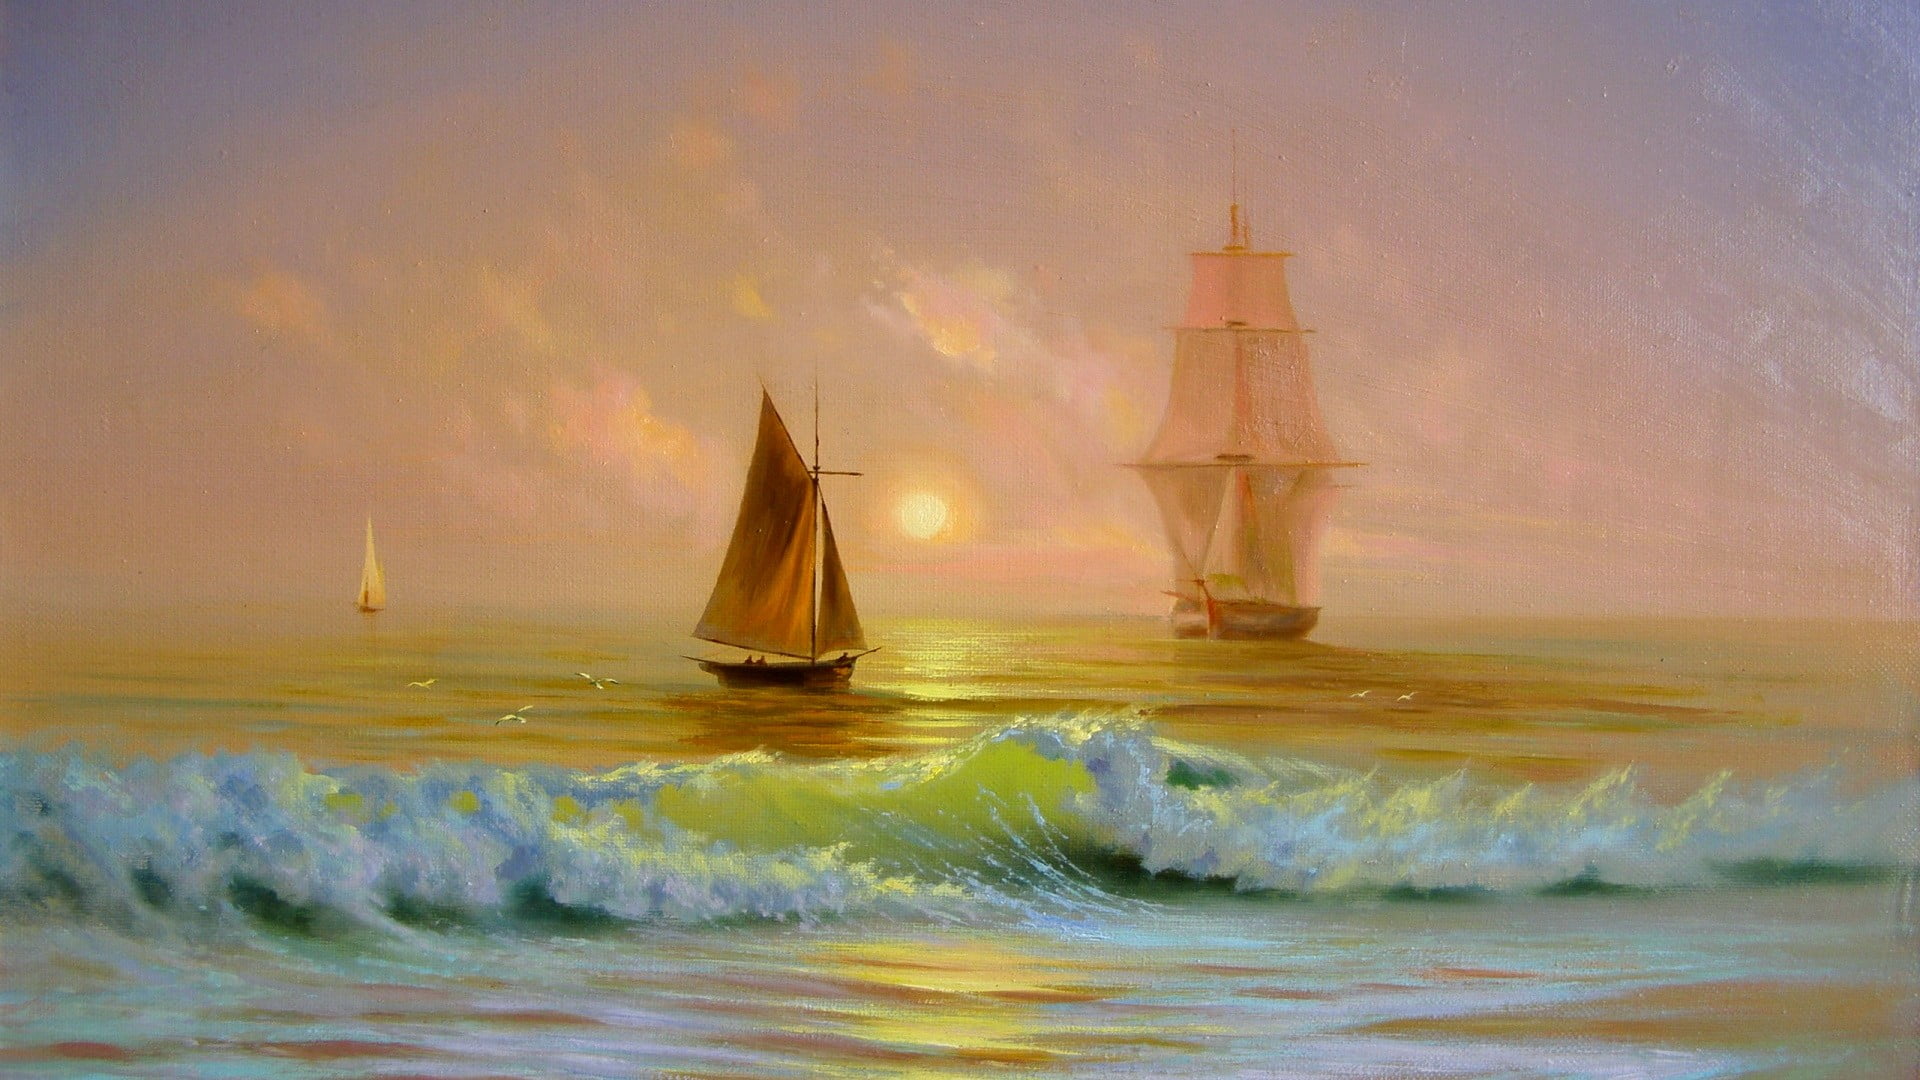 three sailboats at the ocean painting, waves, sea, boat, ship